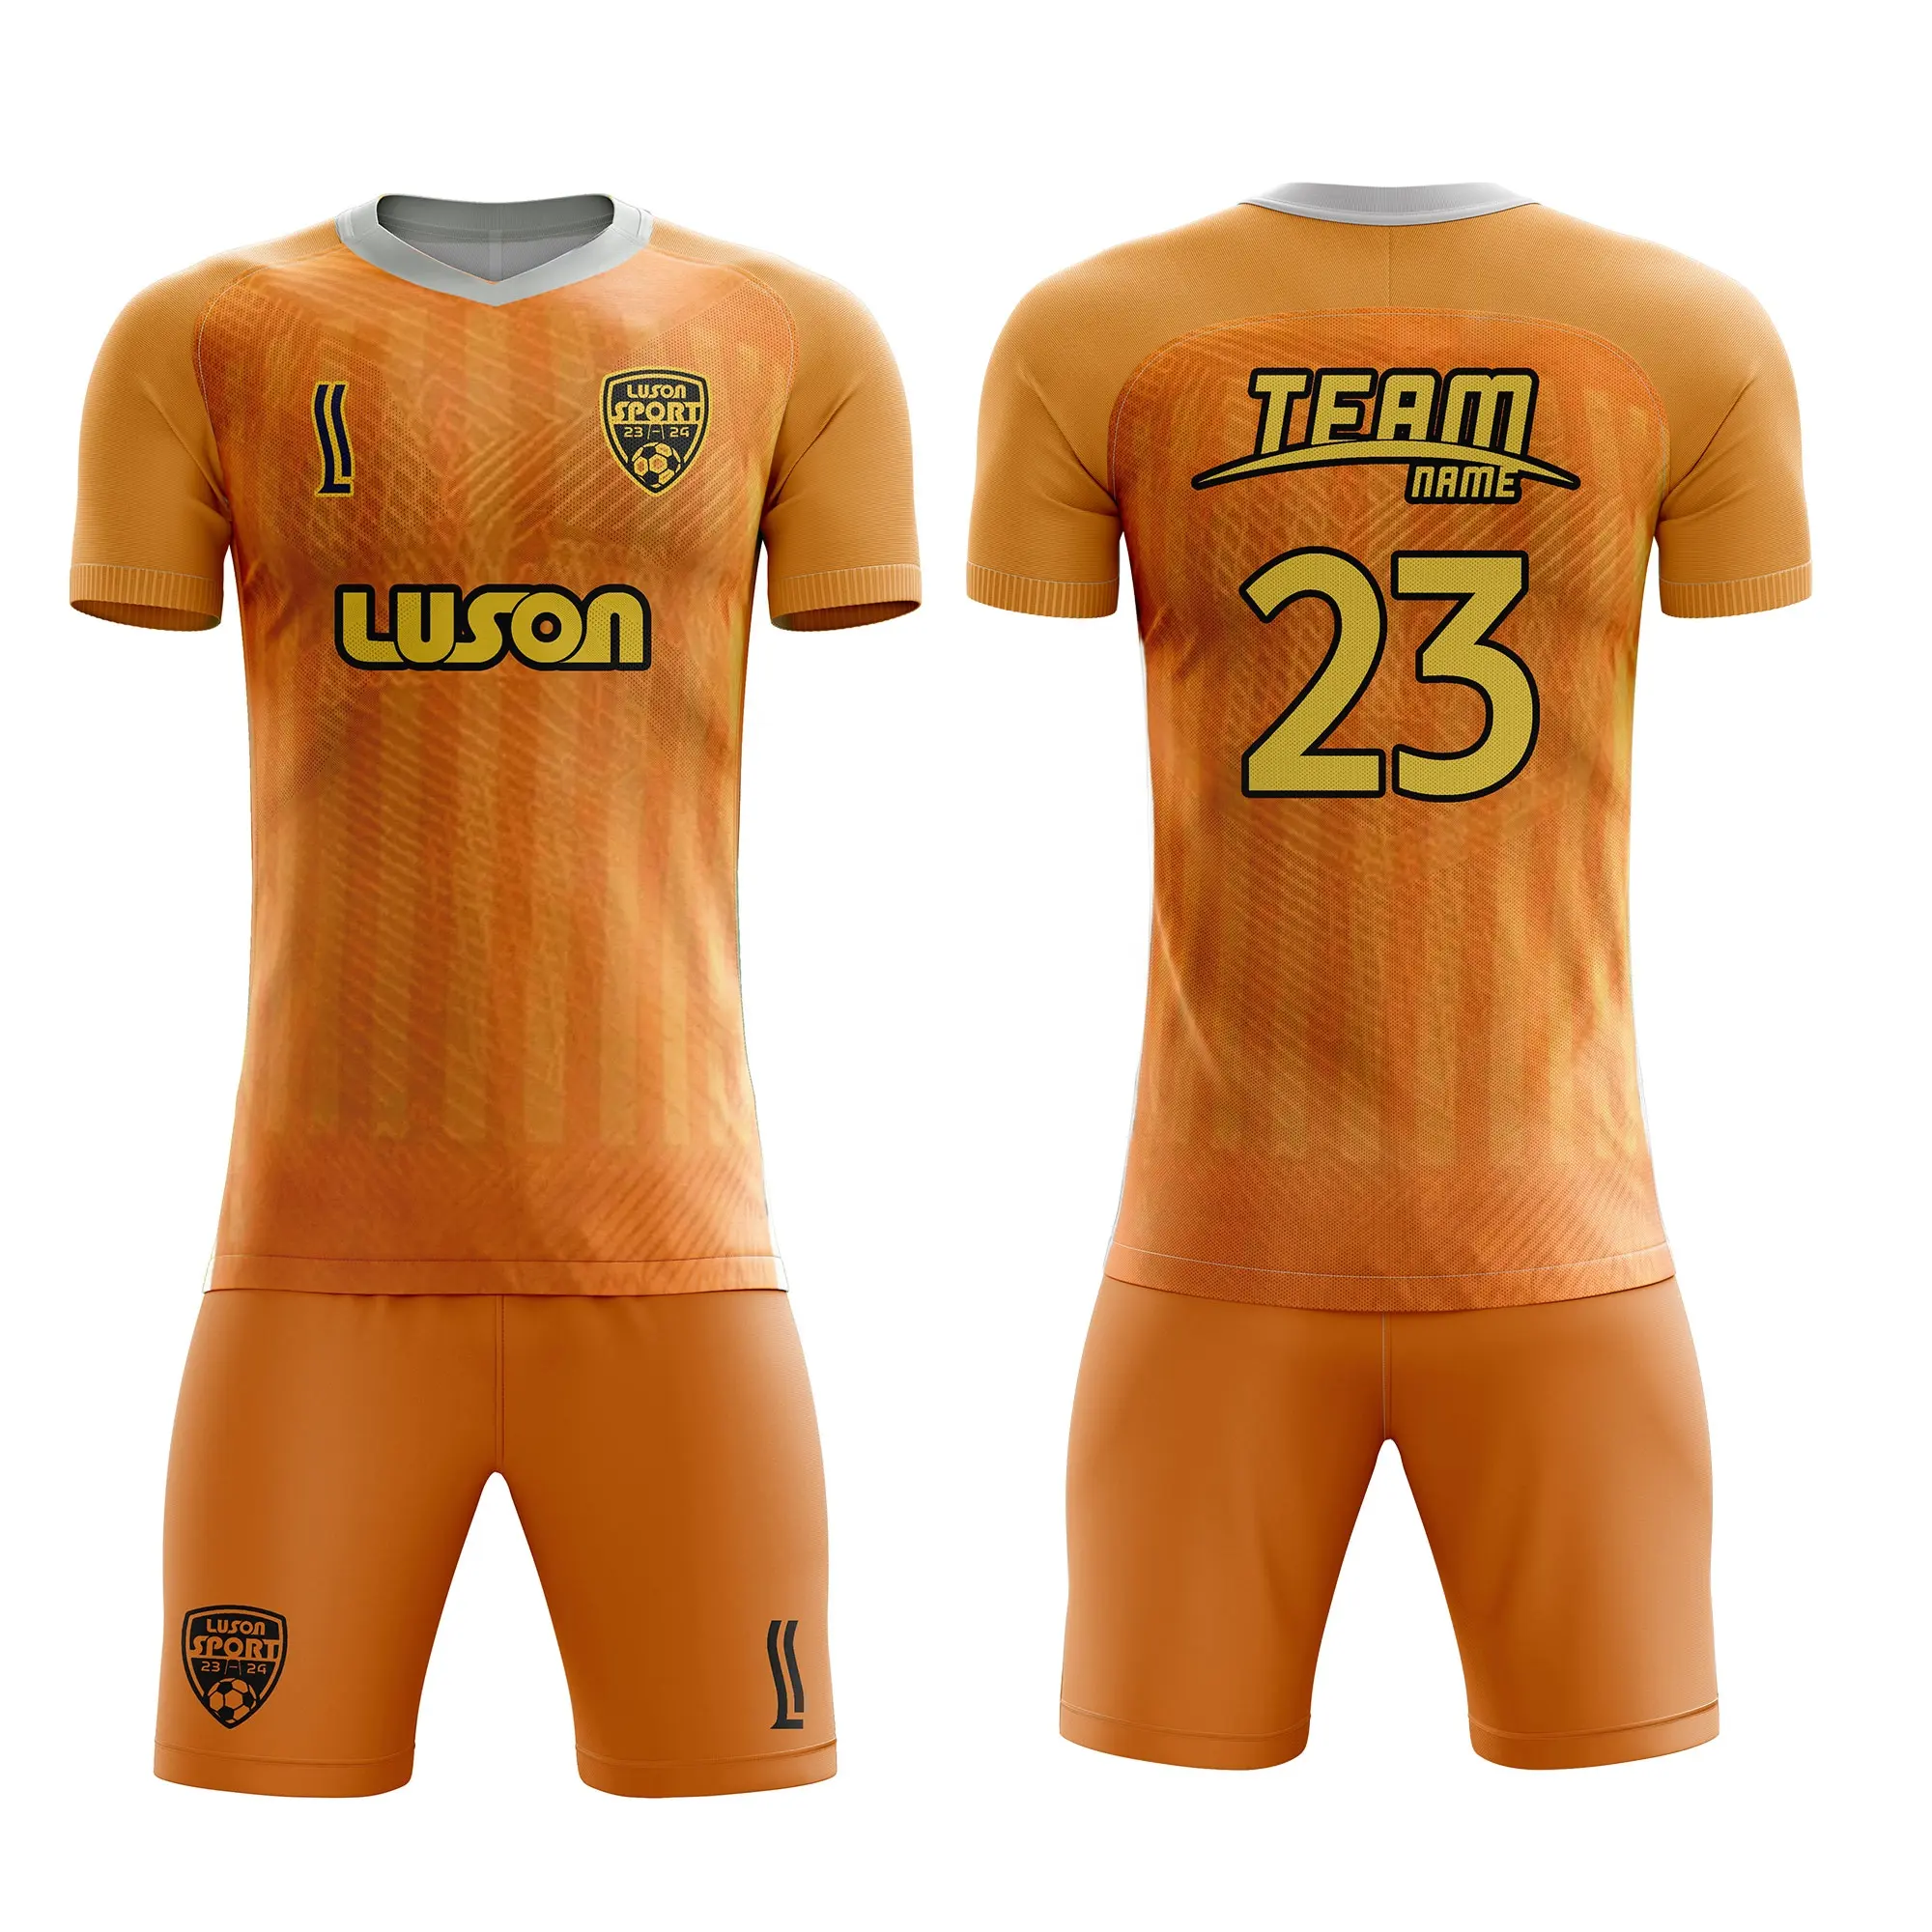 Luson nouvelle saison Club équipe de haute qualité personnalisé respirant impression numérique vêtements de football uniforme maillot ensemble maillot de football